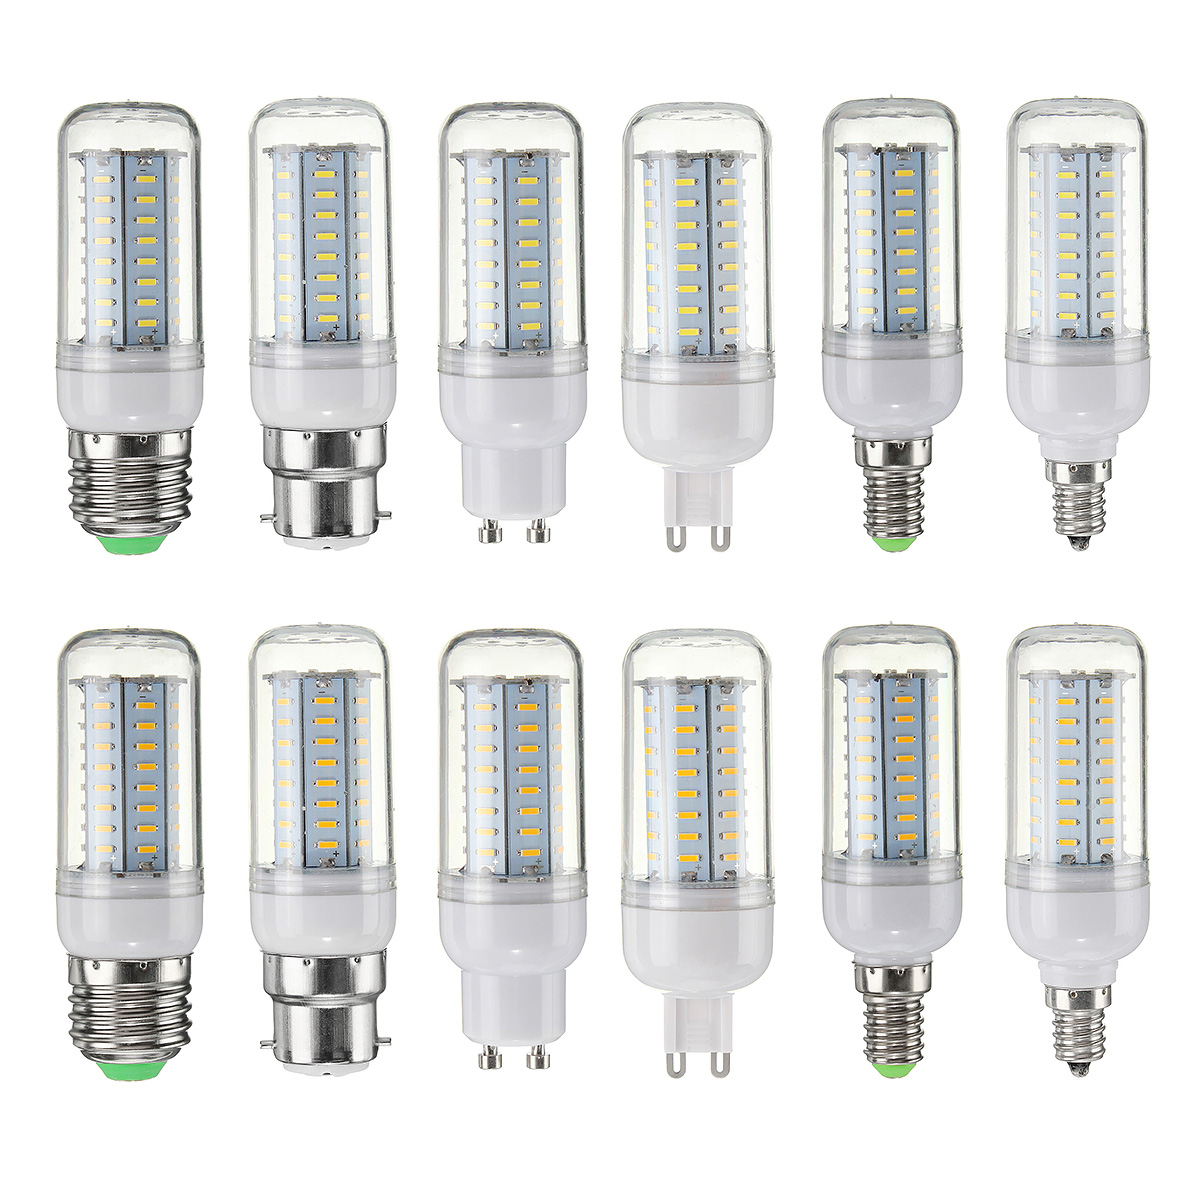 5W-SMD4014-E27-E14-E12-G9-GU10-B22-LED-Corn-Light-Bulb-Lamp-for-Home-Decor-1125742-2